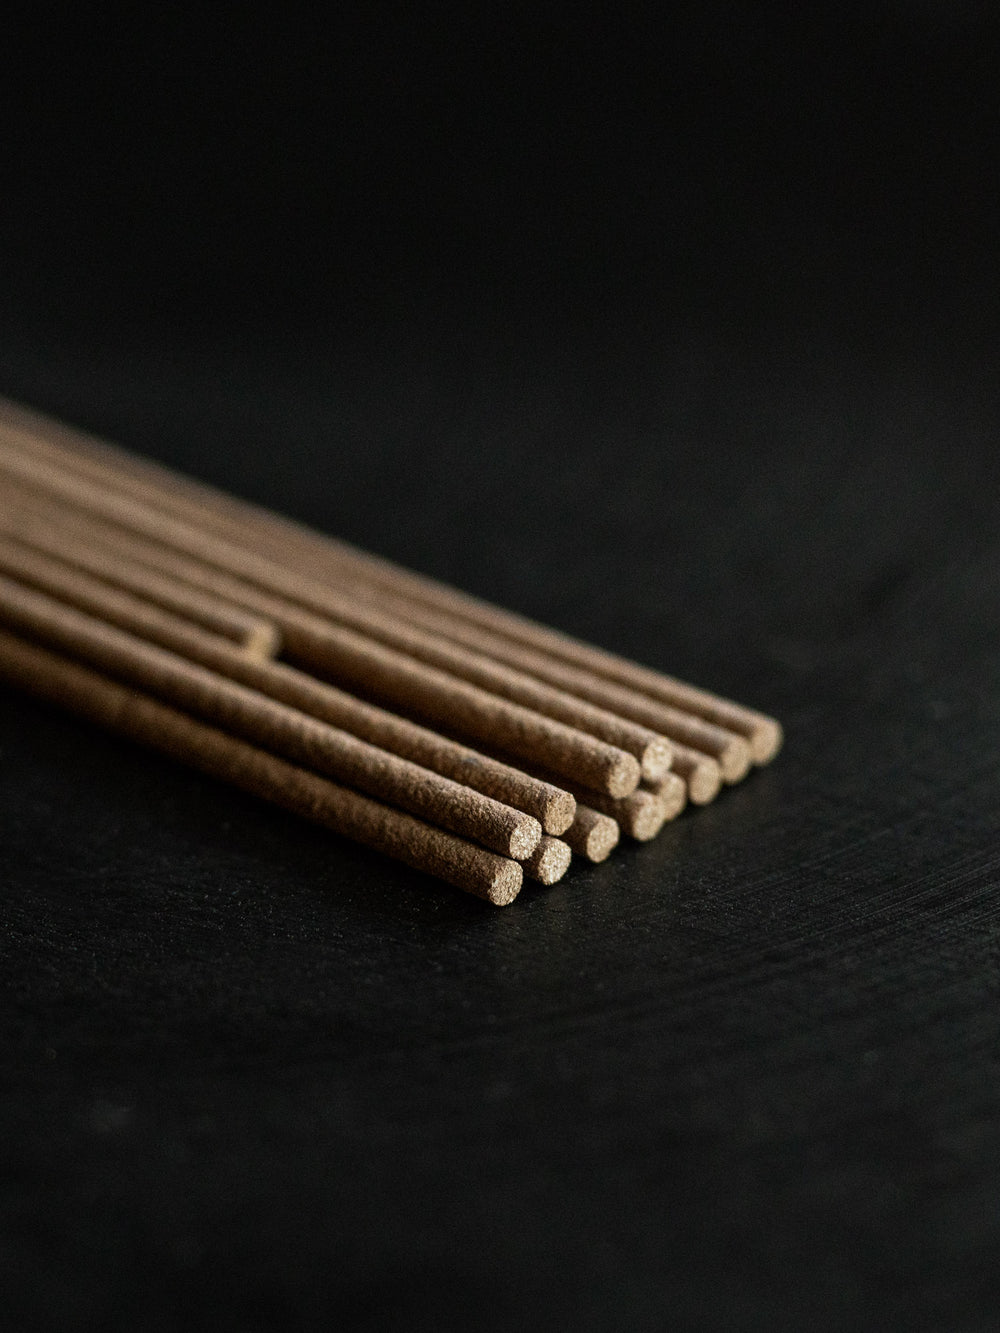 Kungyokudo Incense – Tenjo Kyara Aloeswood